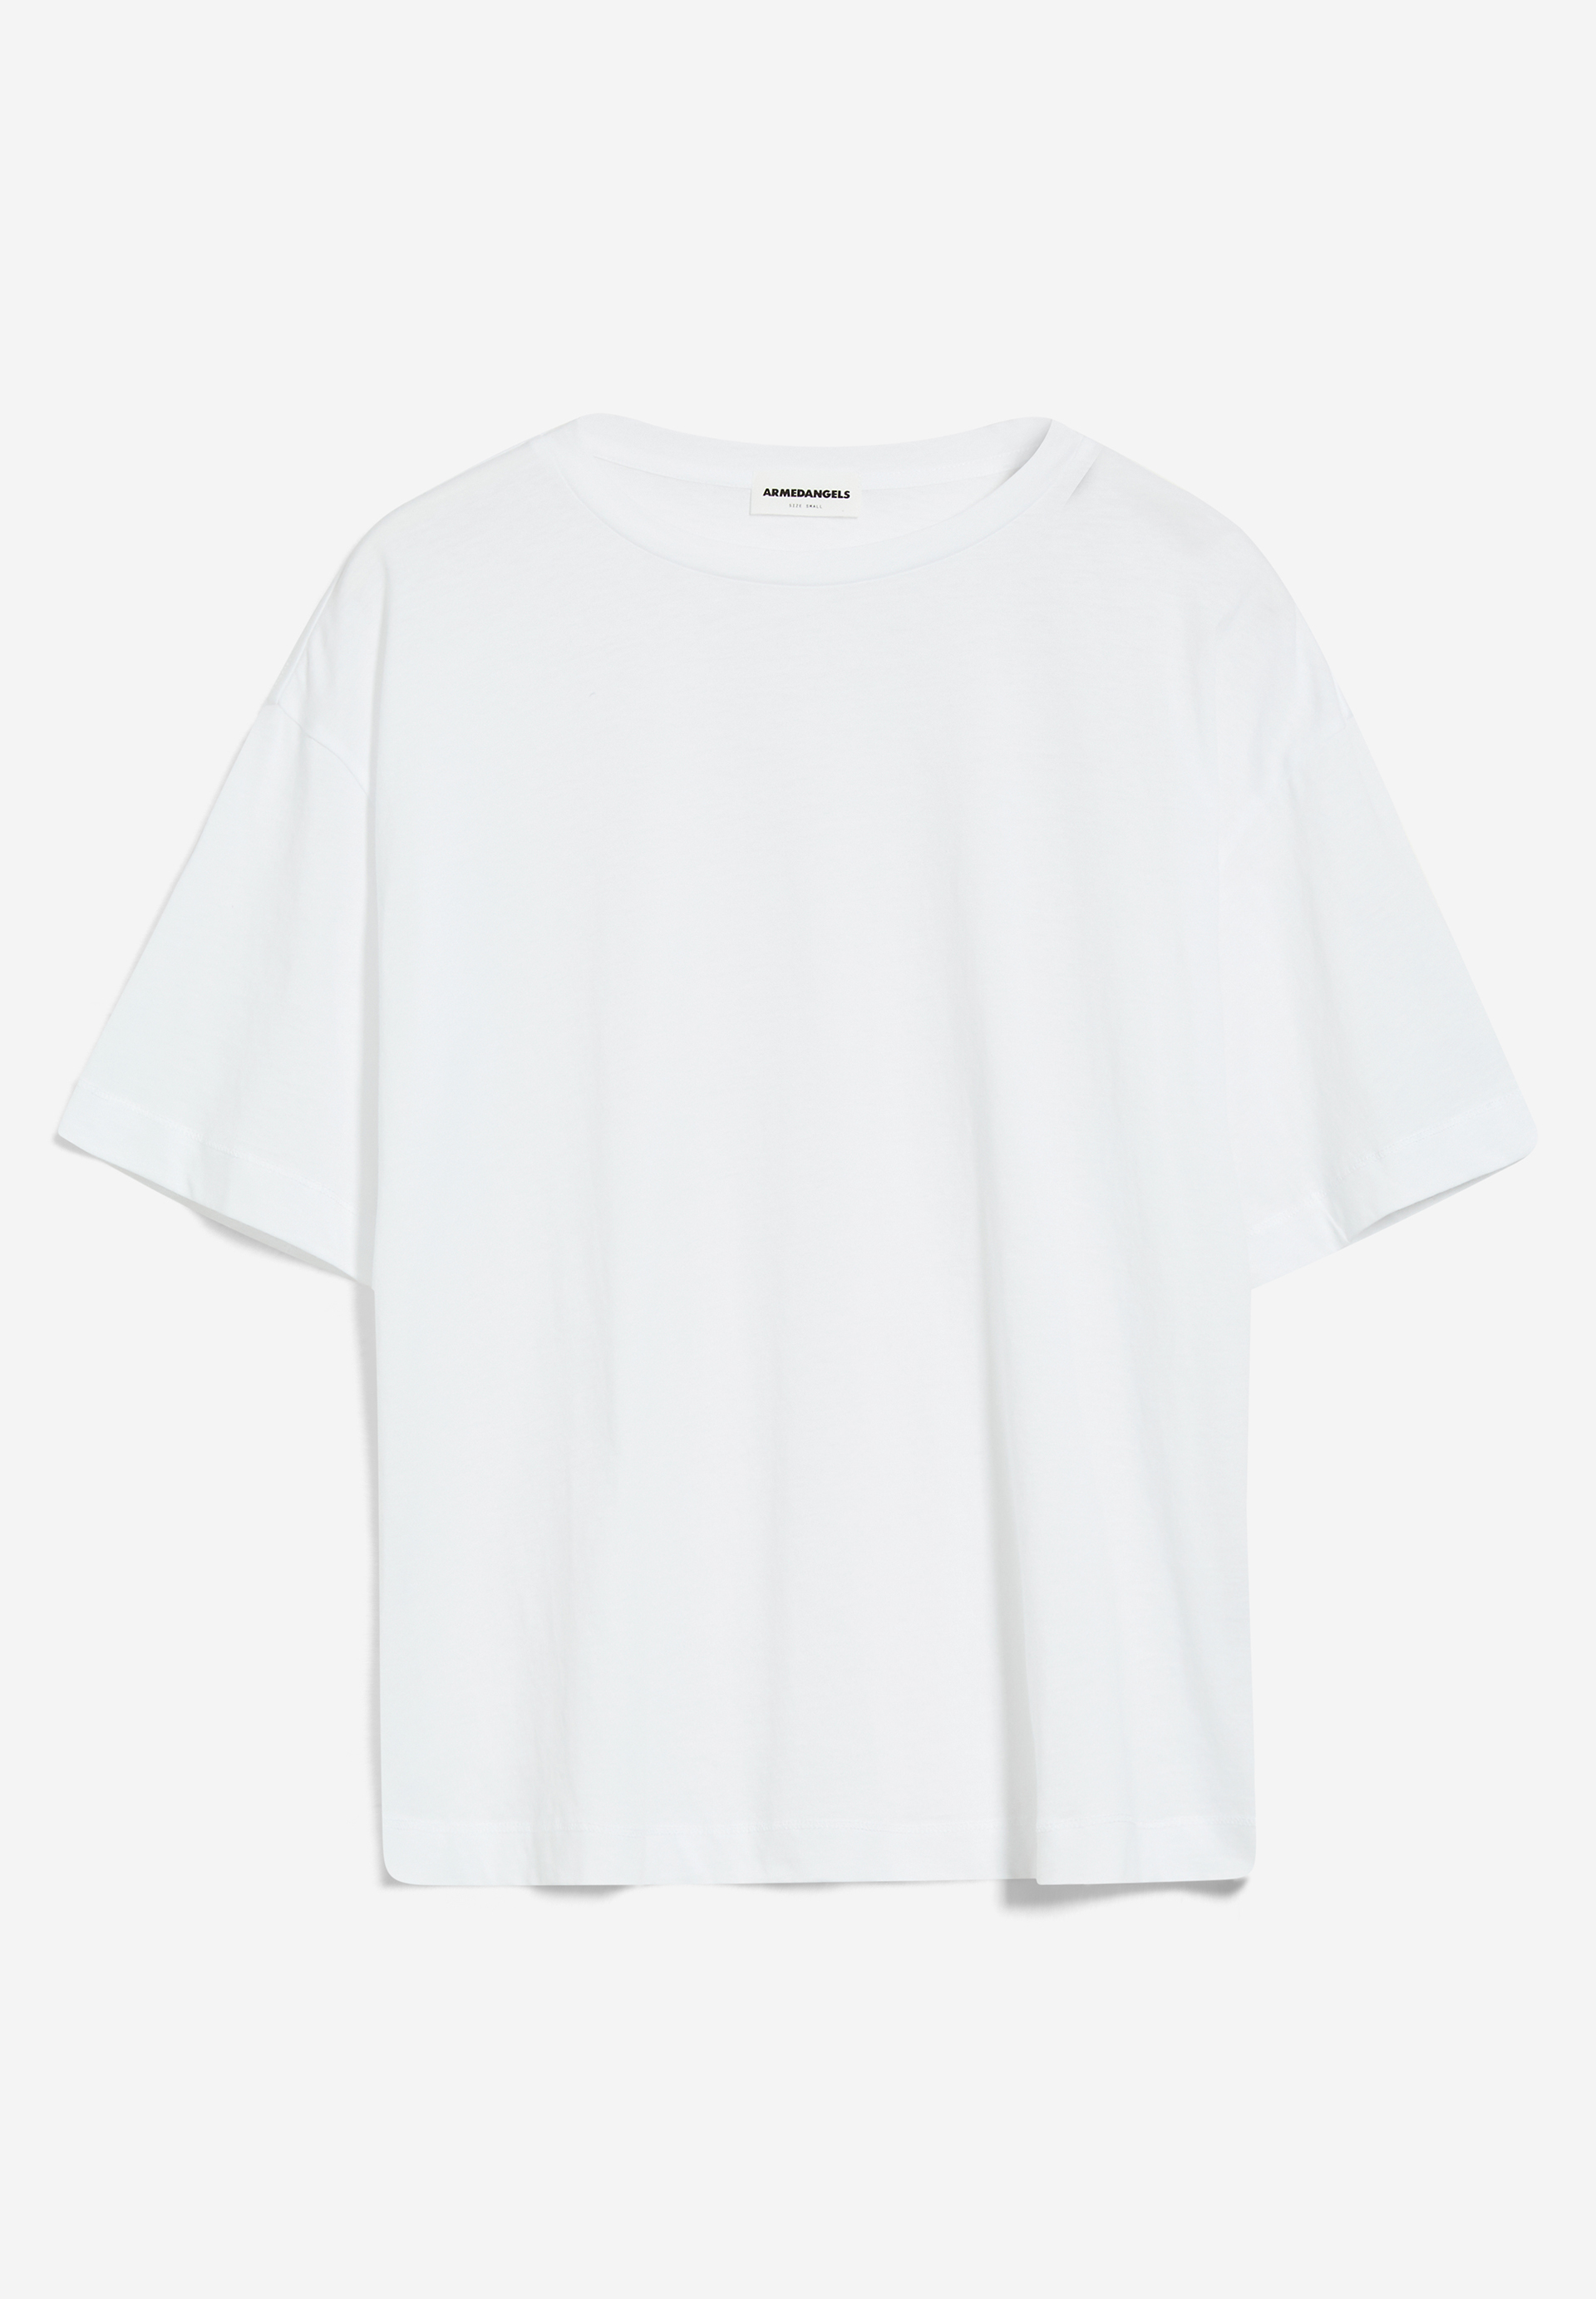 SAIKAA T-Shirt Oversized Fit made of Organic Cotton